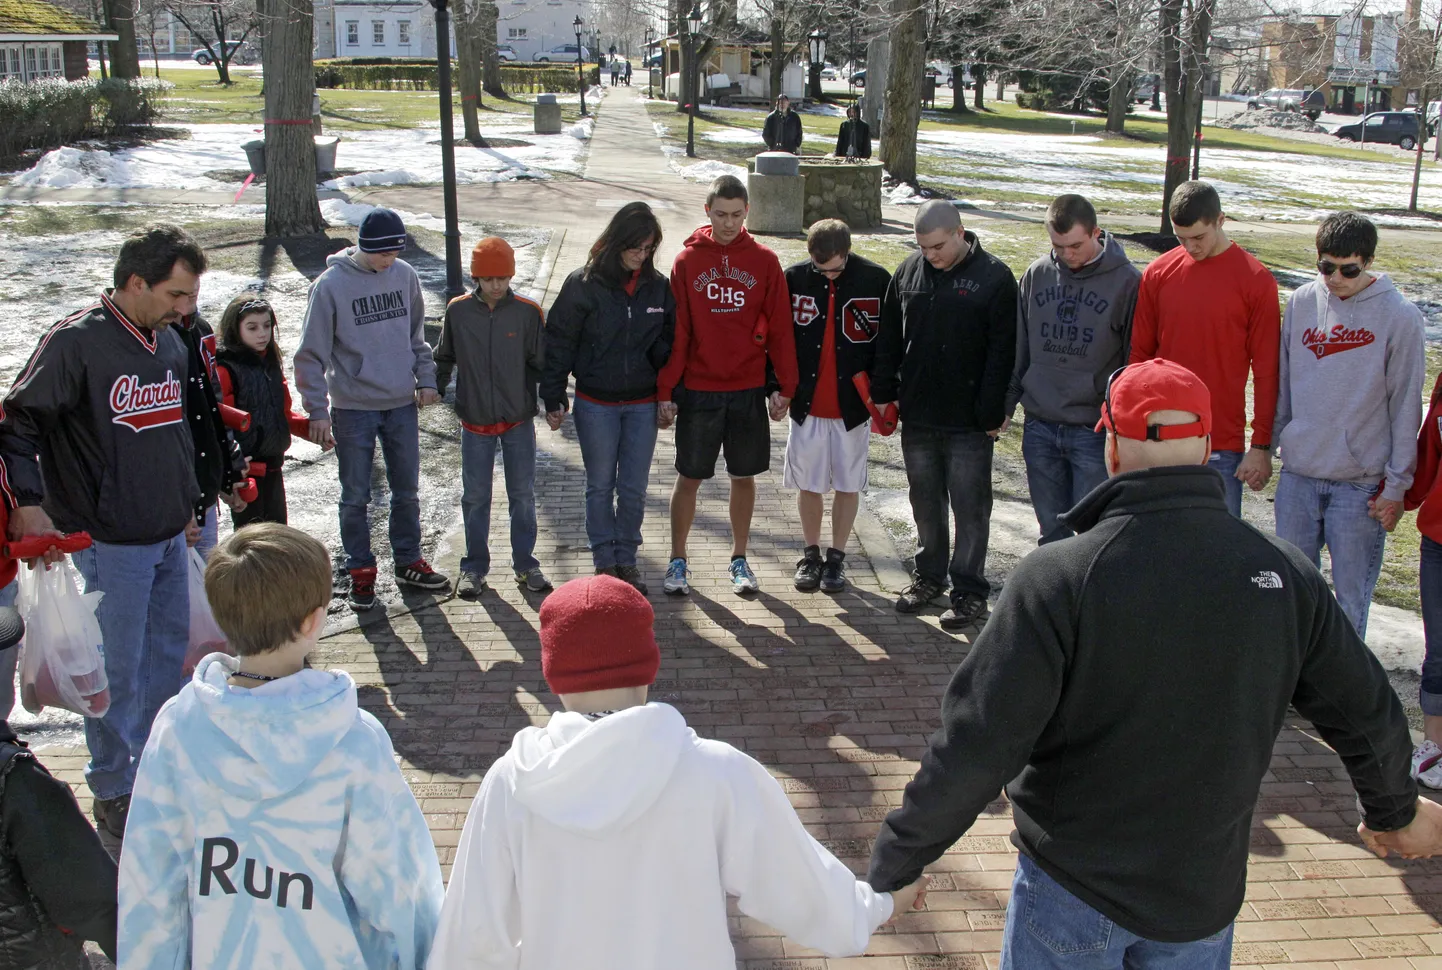 Chardoni keskkooli õpilased ja lapsevanemad tulistamisohvrite eest palvetamas.